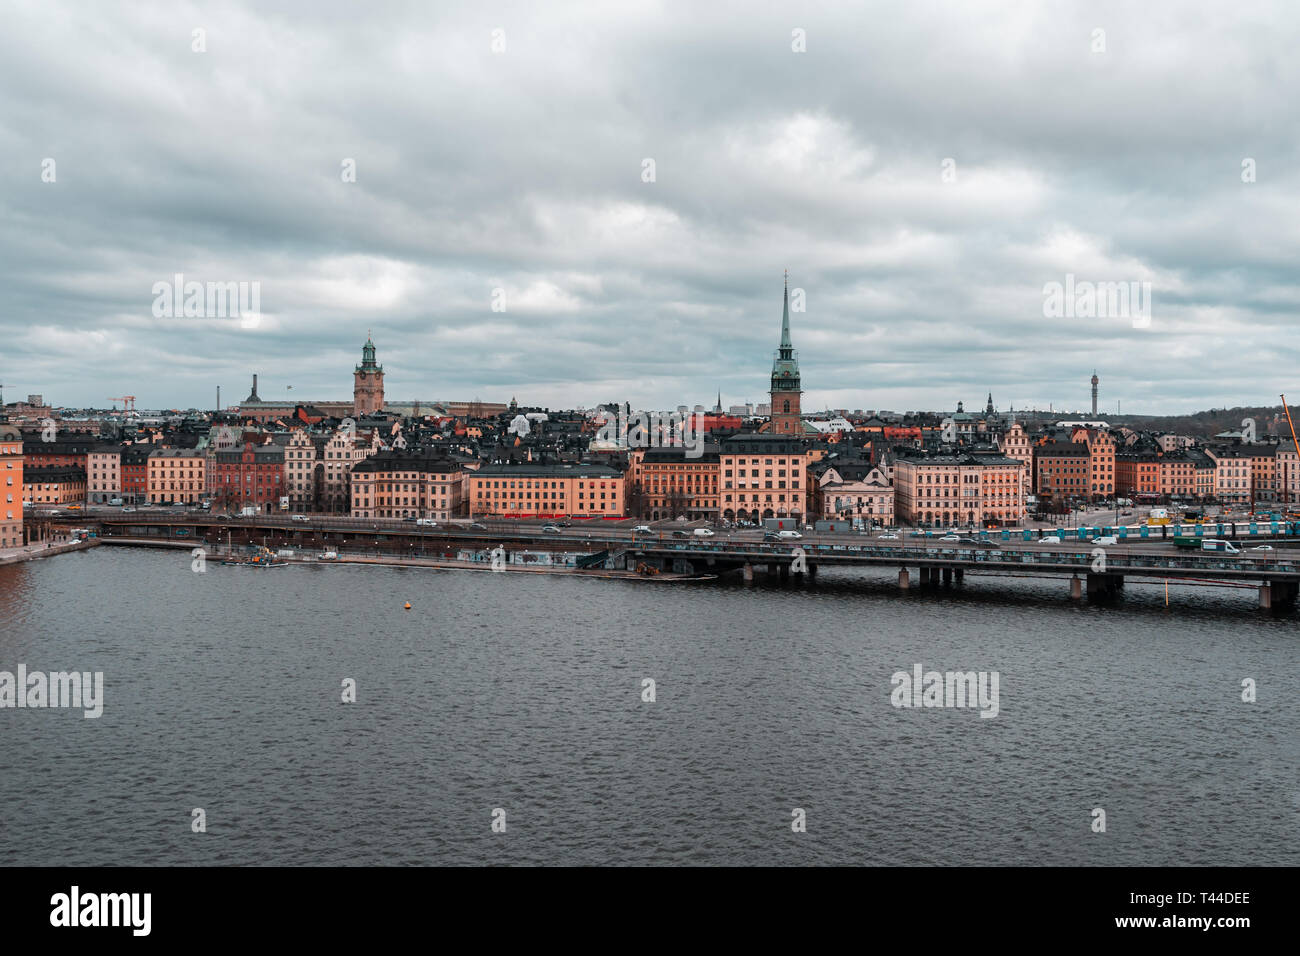 Editorial 03.26.2019 Suède Stockholm vue classique des villes de bâtiments anciens à partir de 1600 et le pont avec le métro et les voitures Banque D'Images